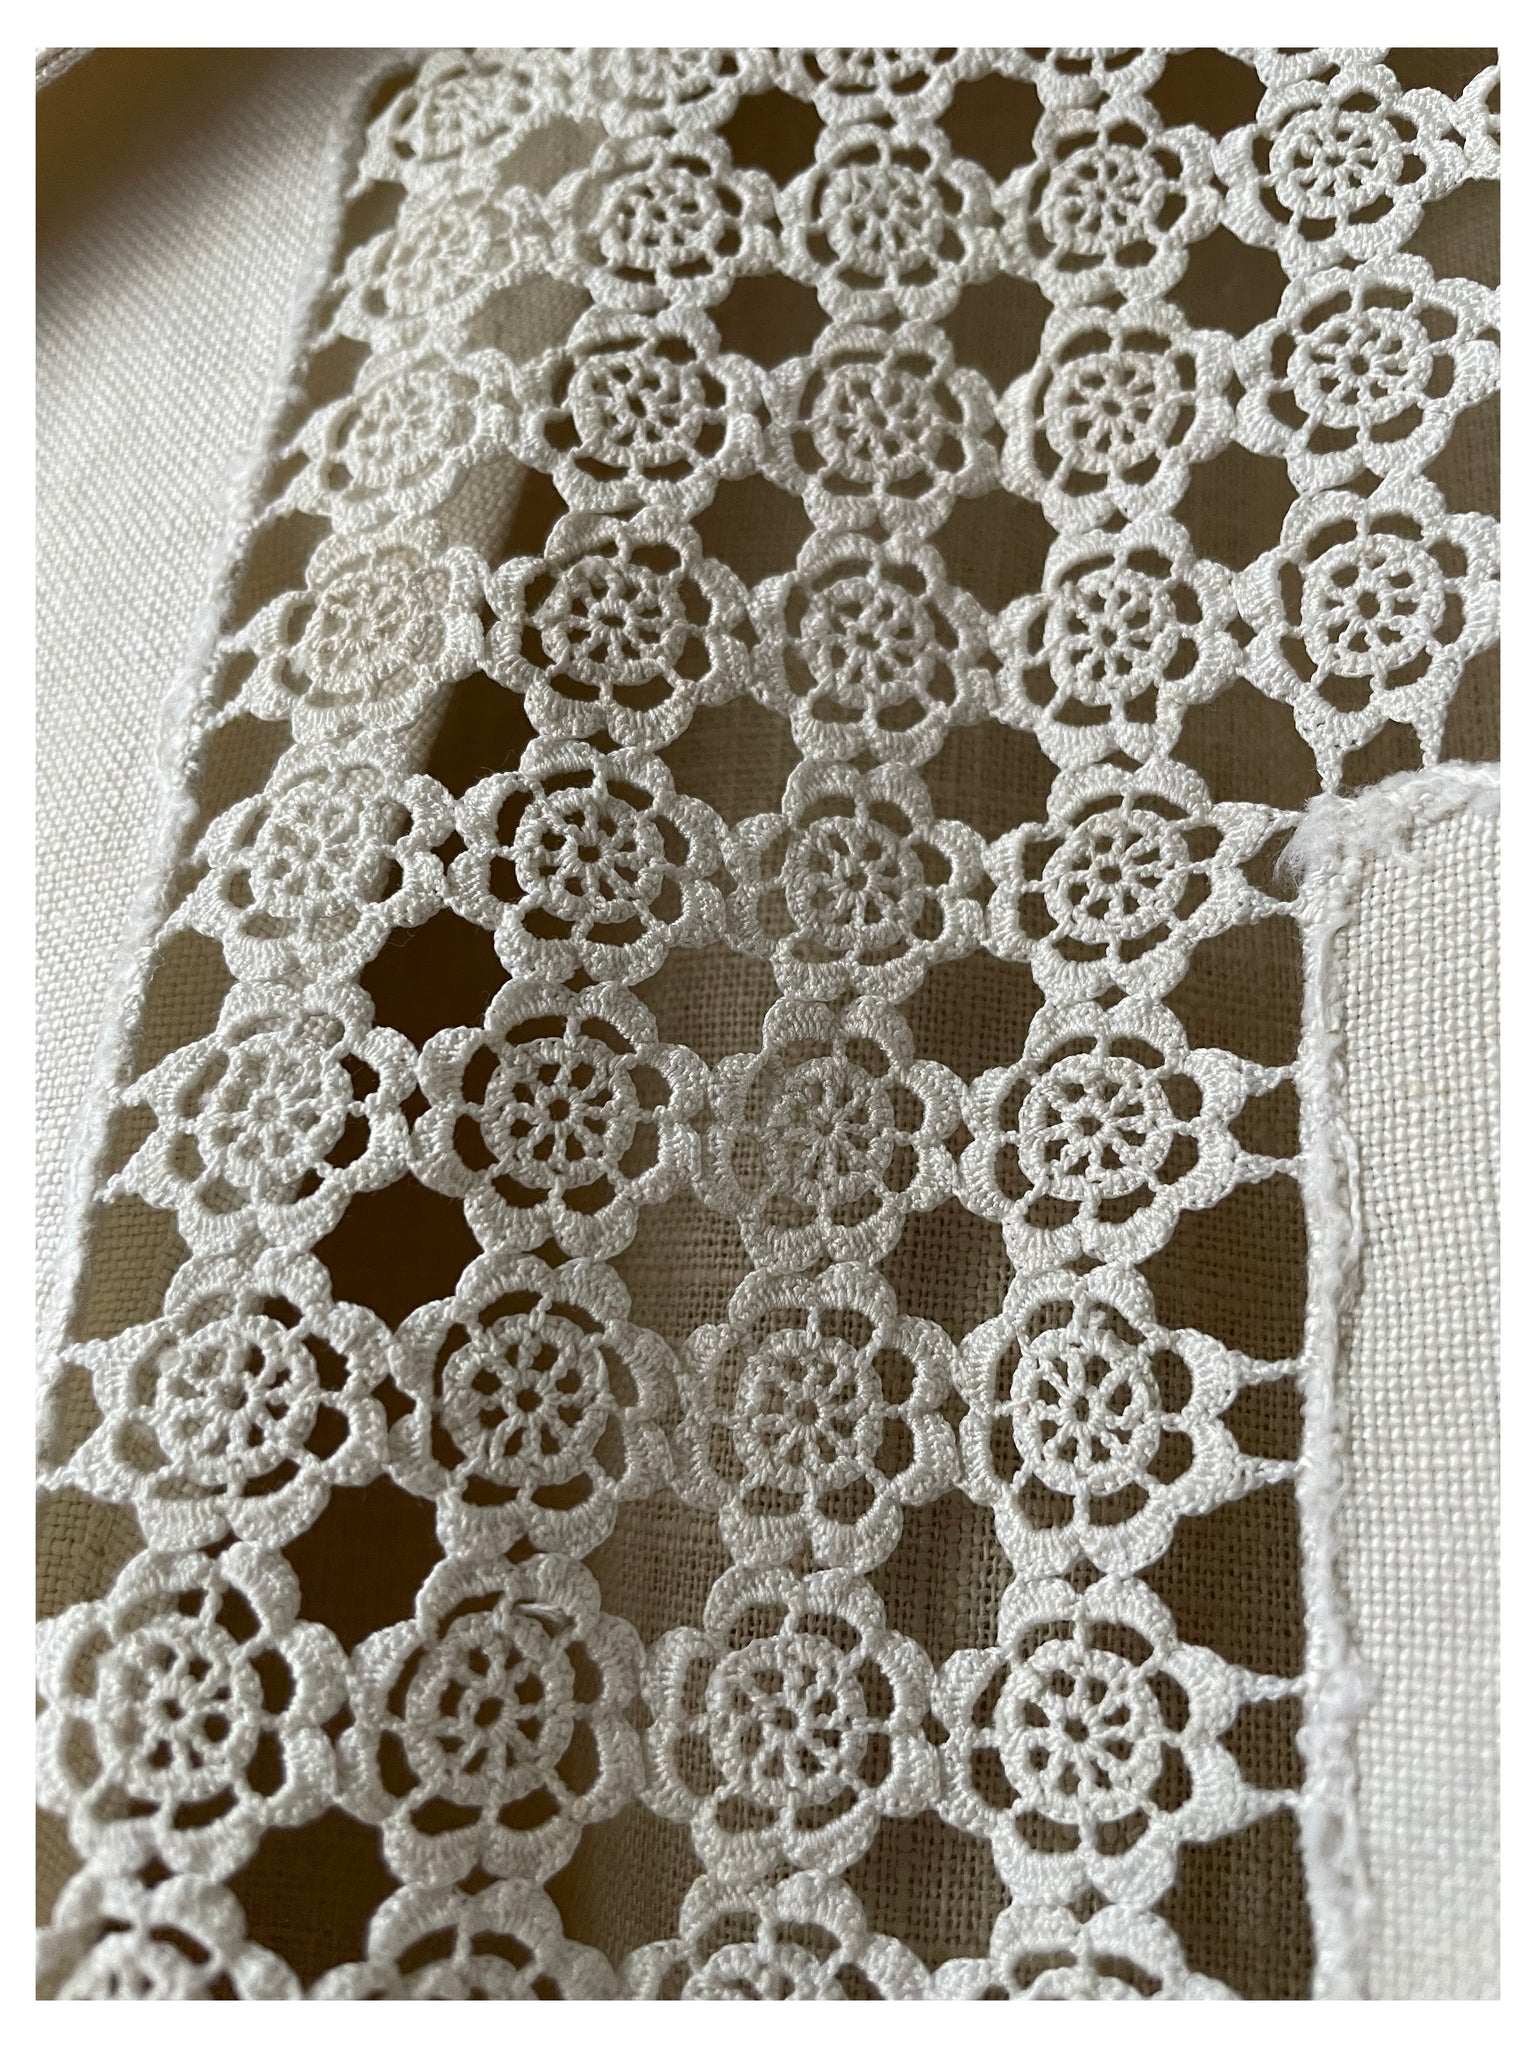 Floral crochet